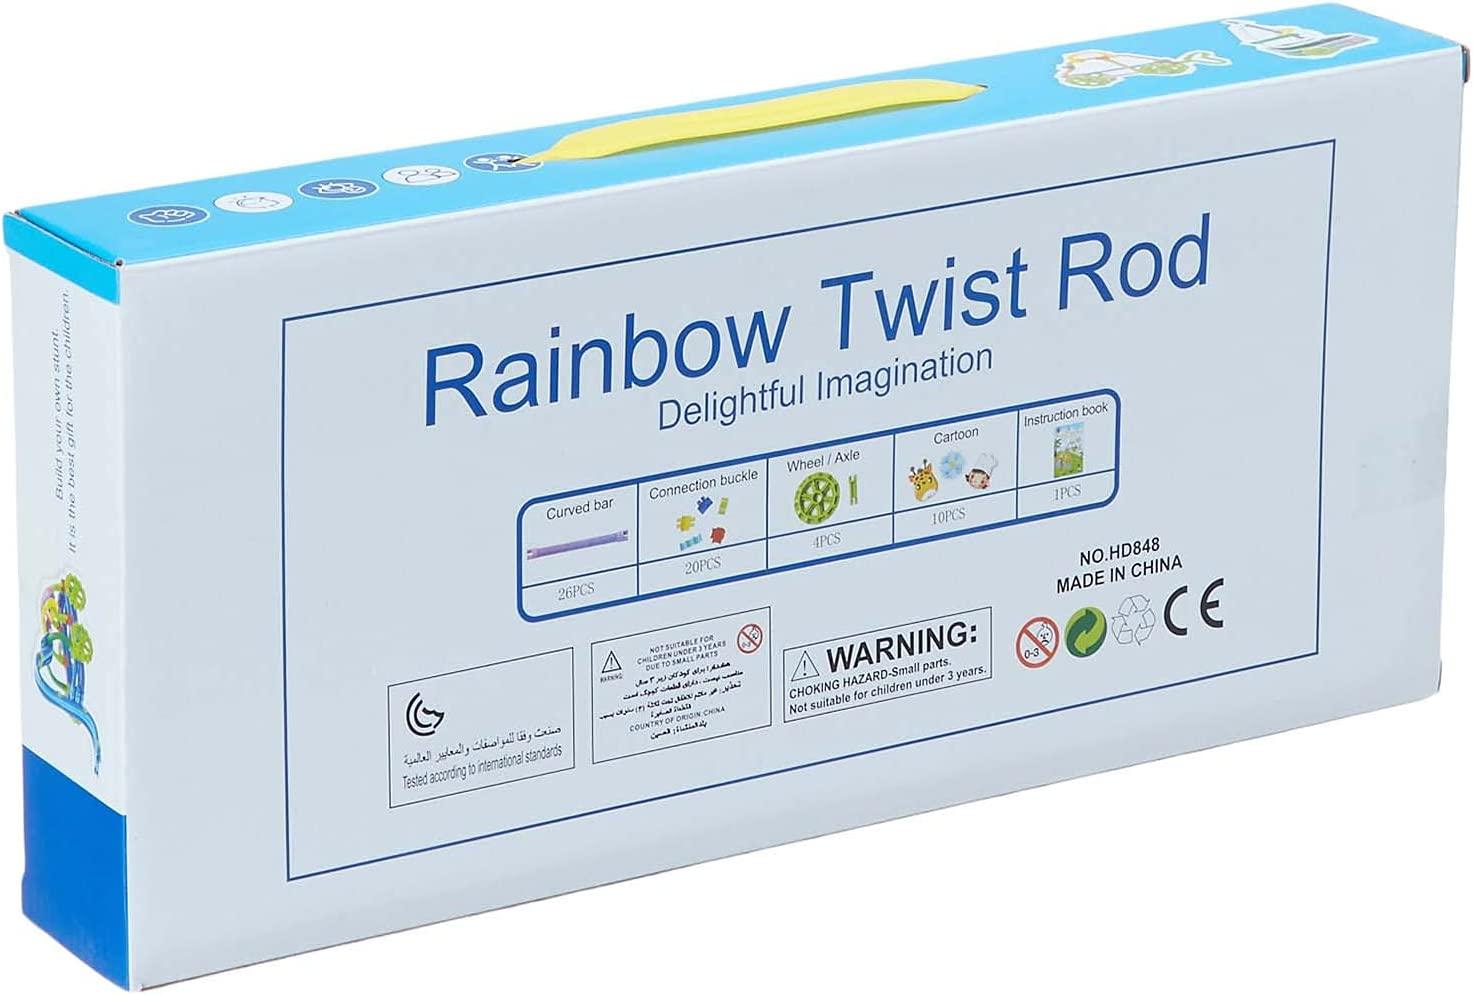 Rainbow Twist Rods Toy - Ourkids - OKO